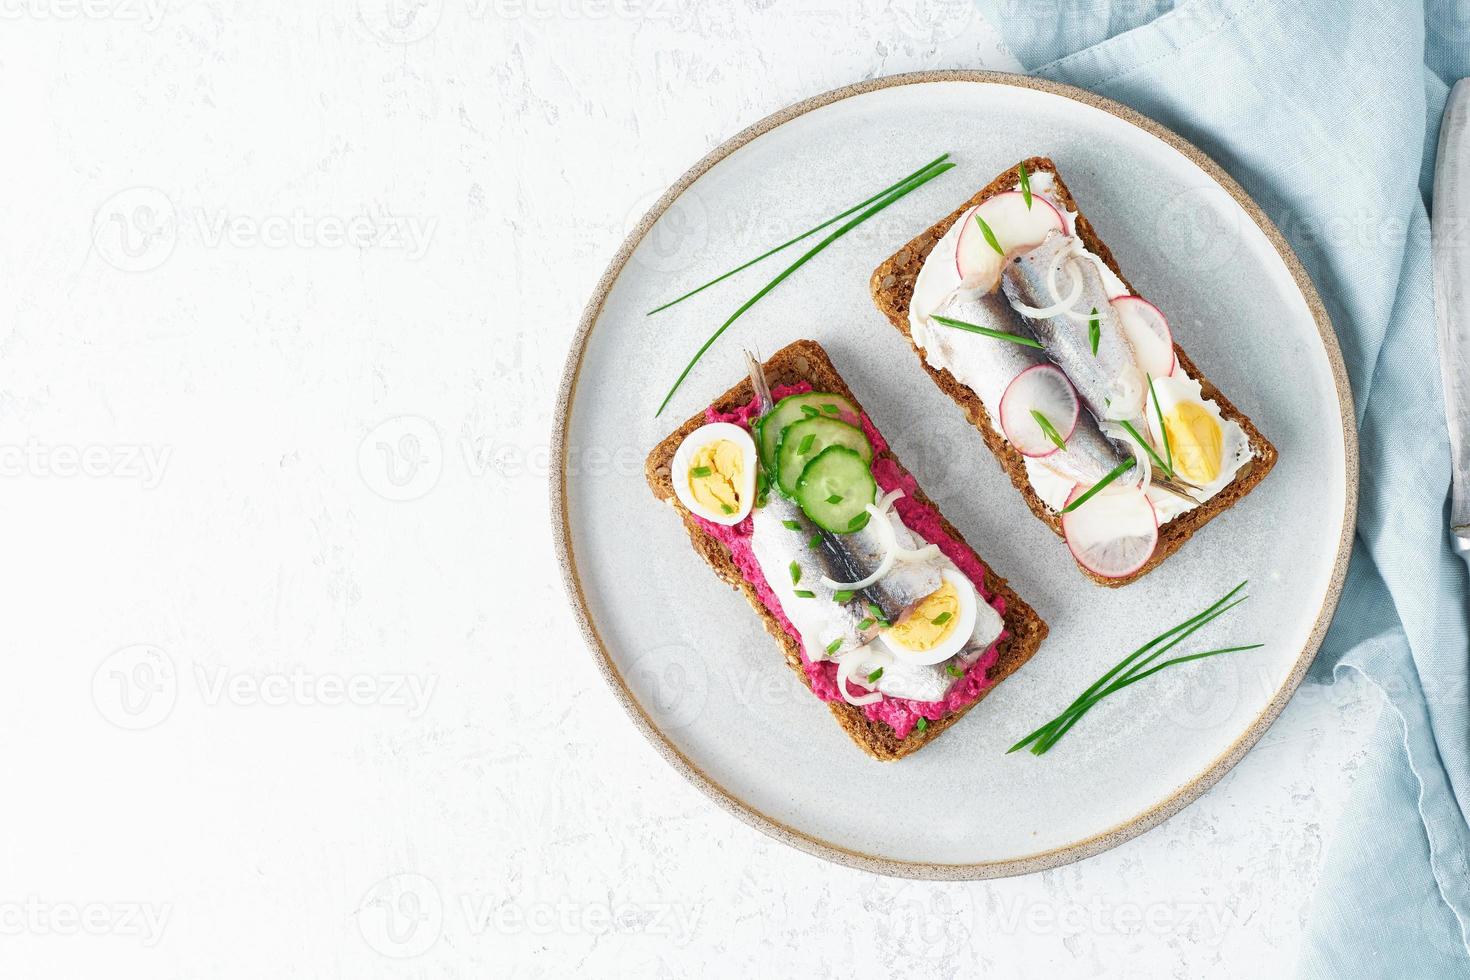 Smorrebrod di pesce salato, set di cinque panini tradizionali danesi. pane nero di segale foto